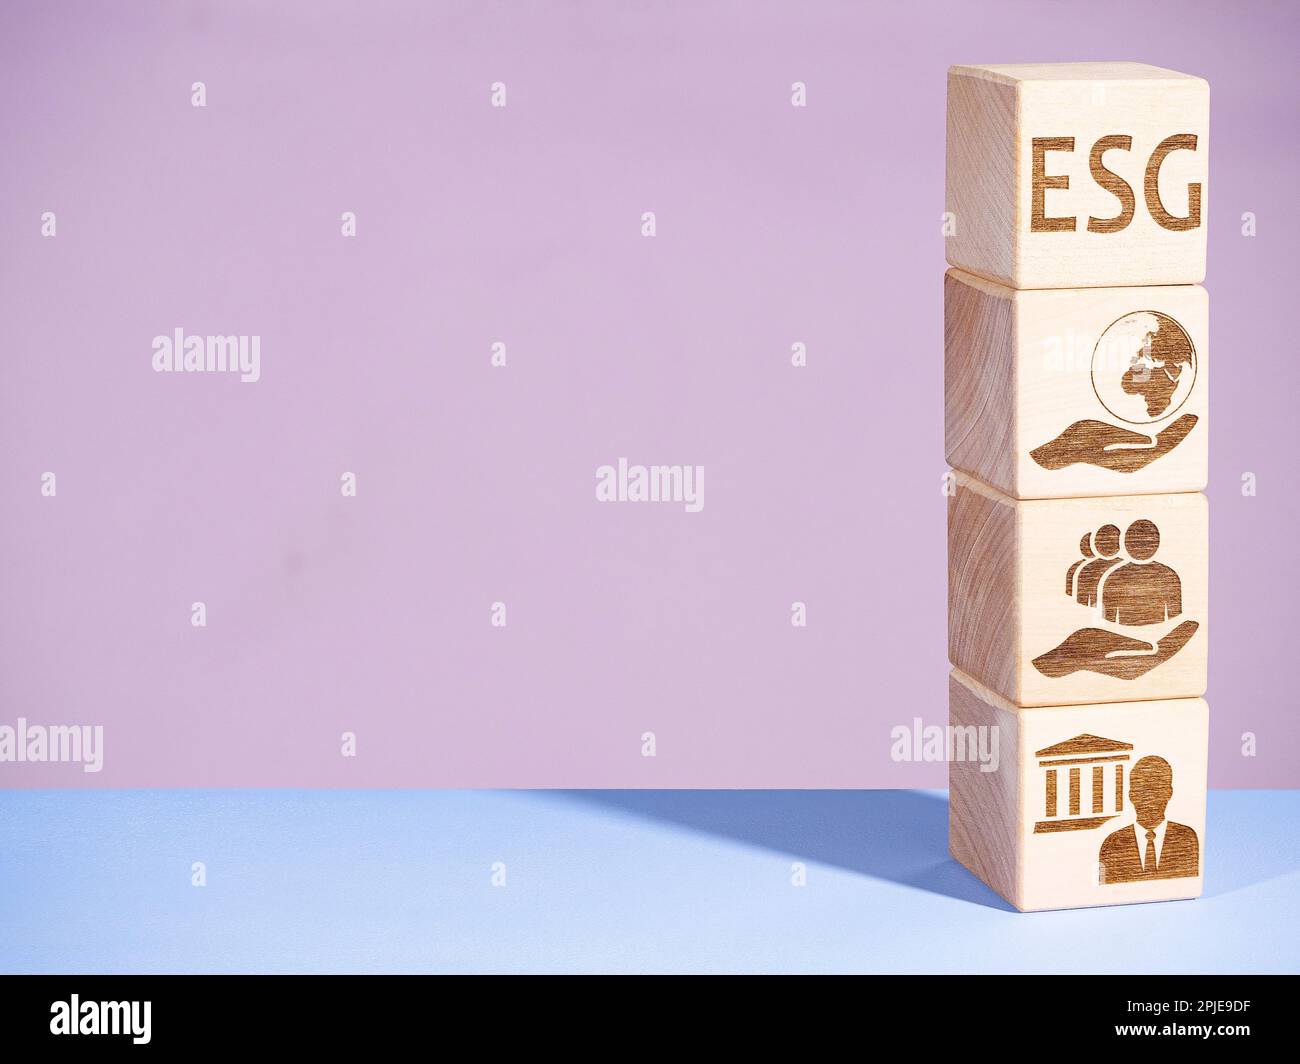 Symboles environnementaux, de gouvernance et sociaux sur les blocs de bois comme concept de principes ESG Banque D'Images